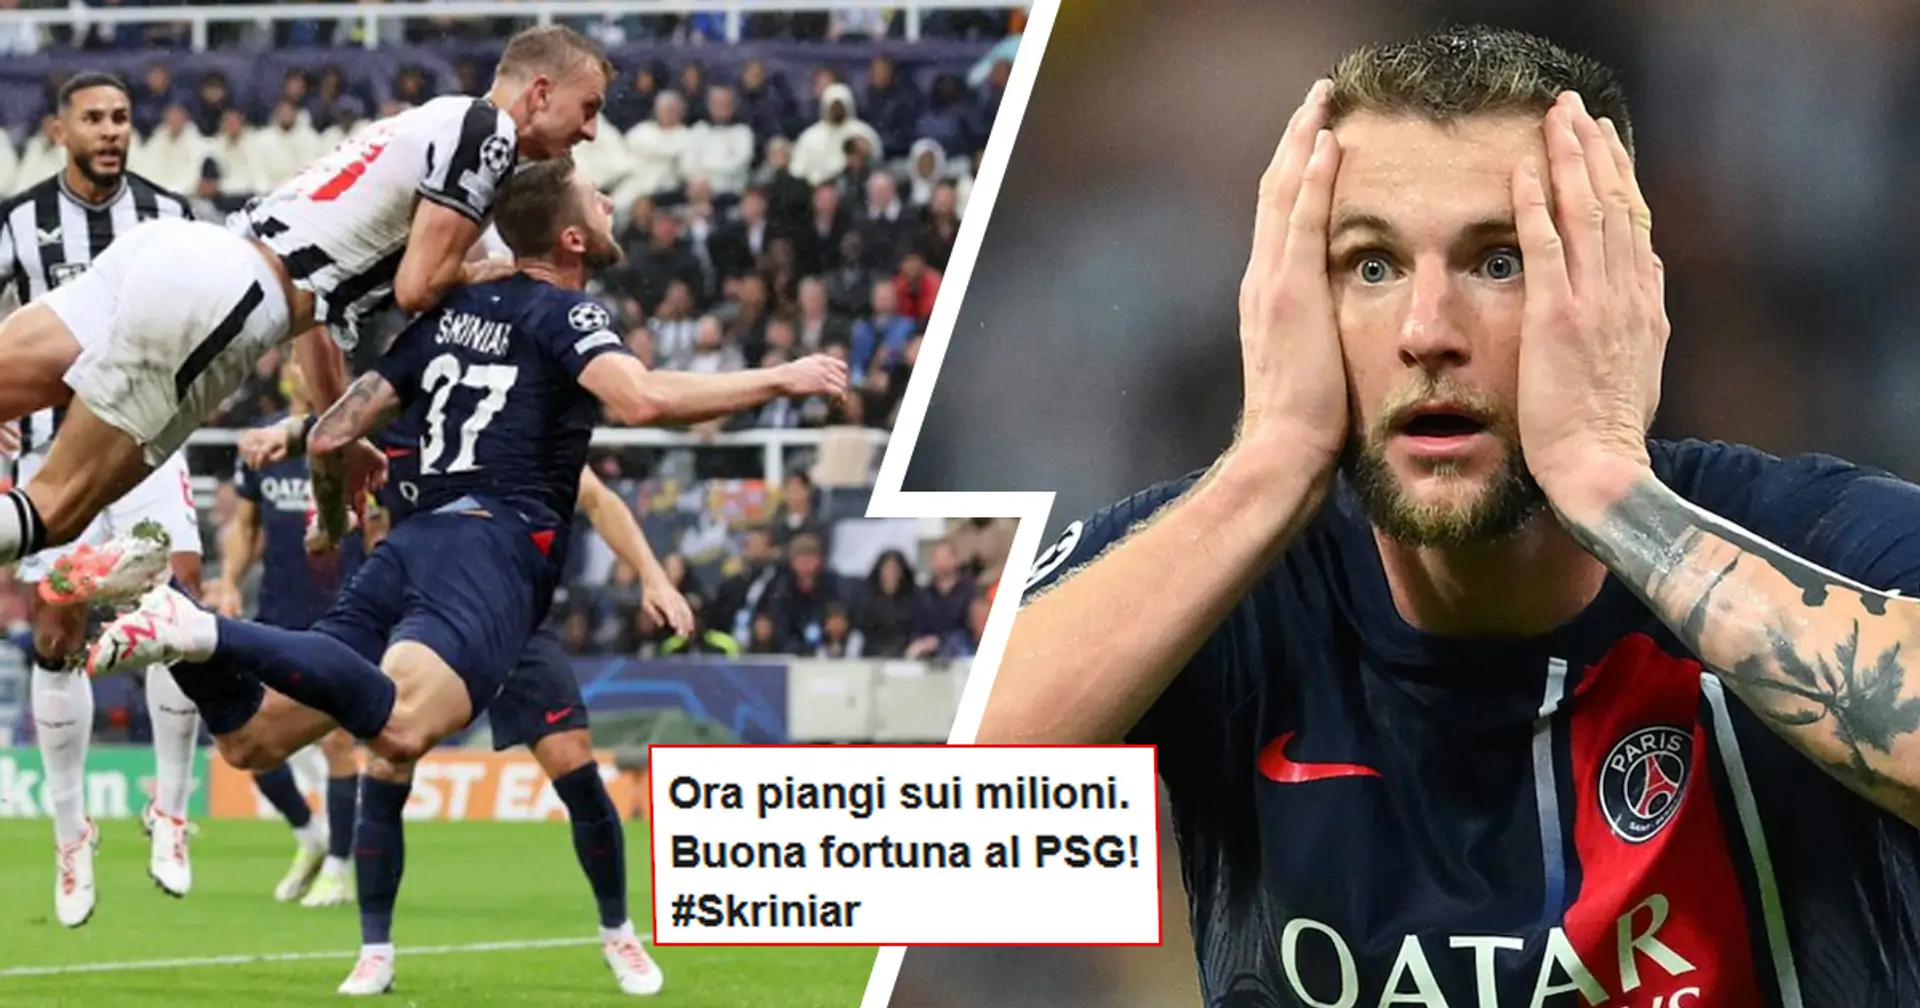 Skriniar contestato dopo il ko del PSG in Champions, i tifosi dell'Inter gongolano: "Meglio così, ora c'è Pavard!"